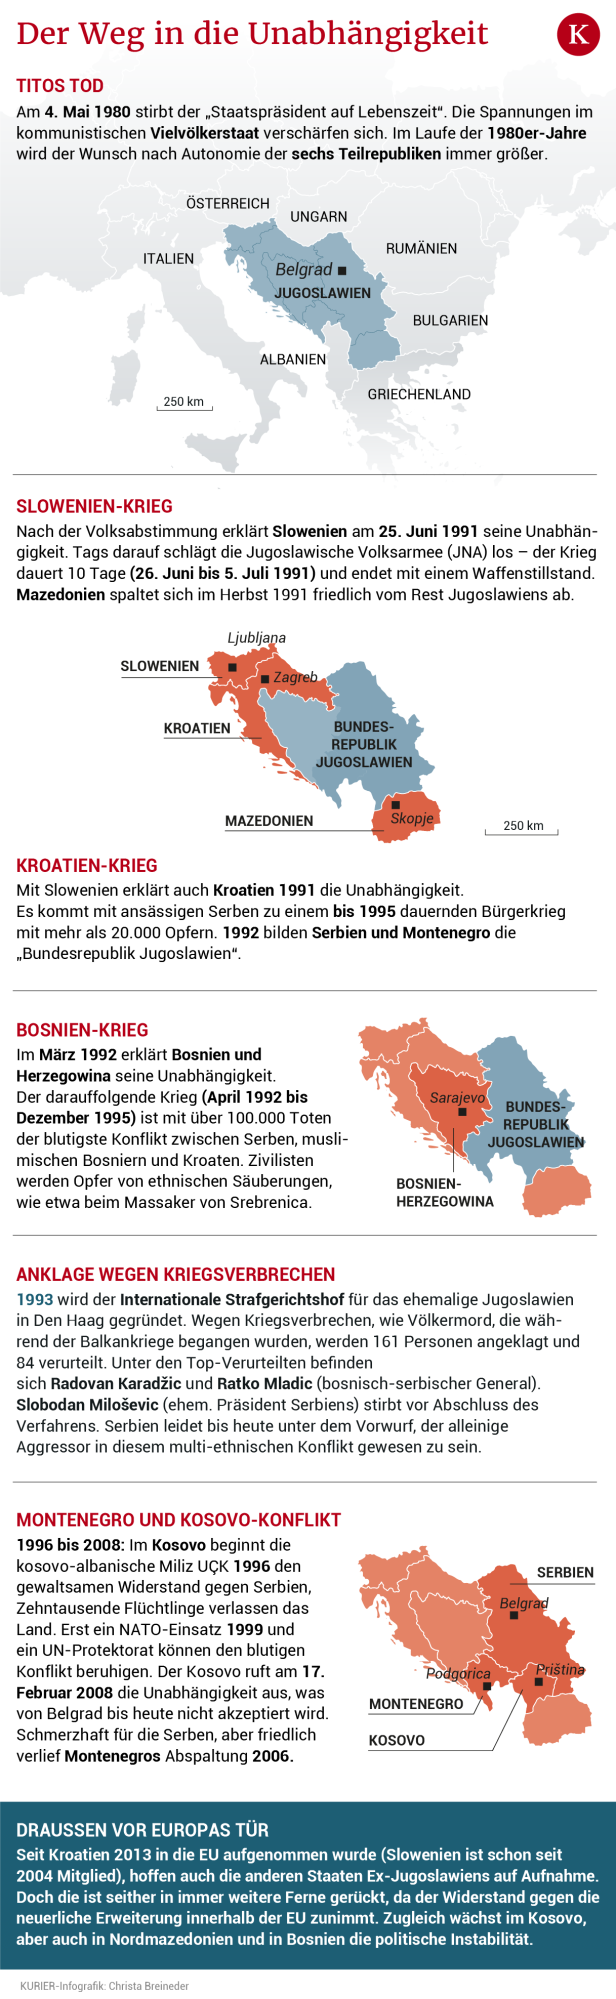 30 Jahre Zerfall Jugoslawiens: Blutiger Abschied von einer Idee